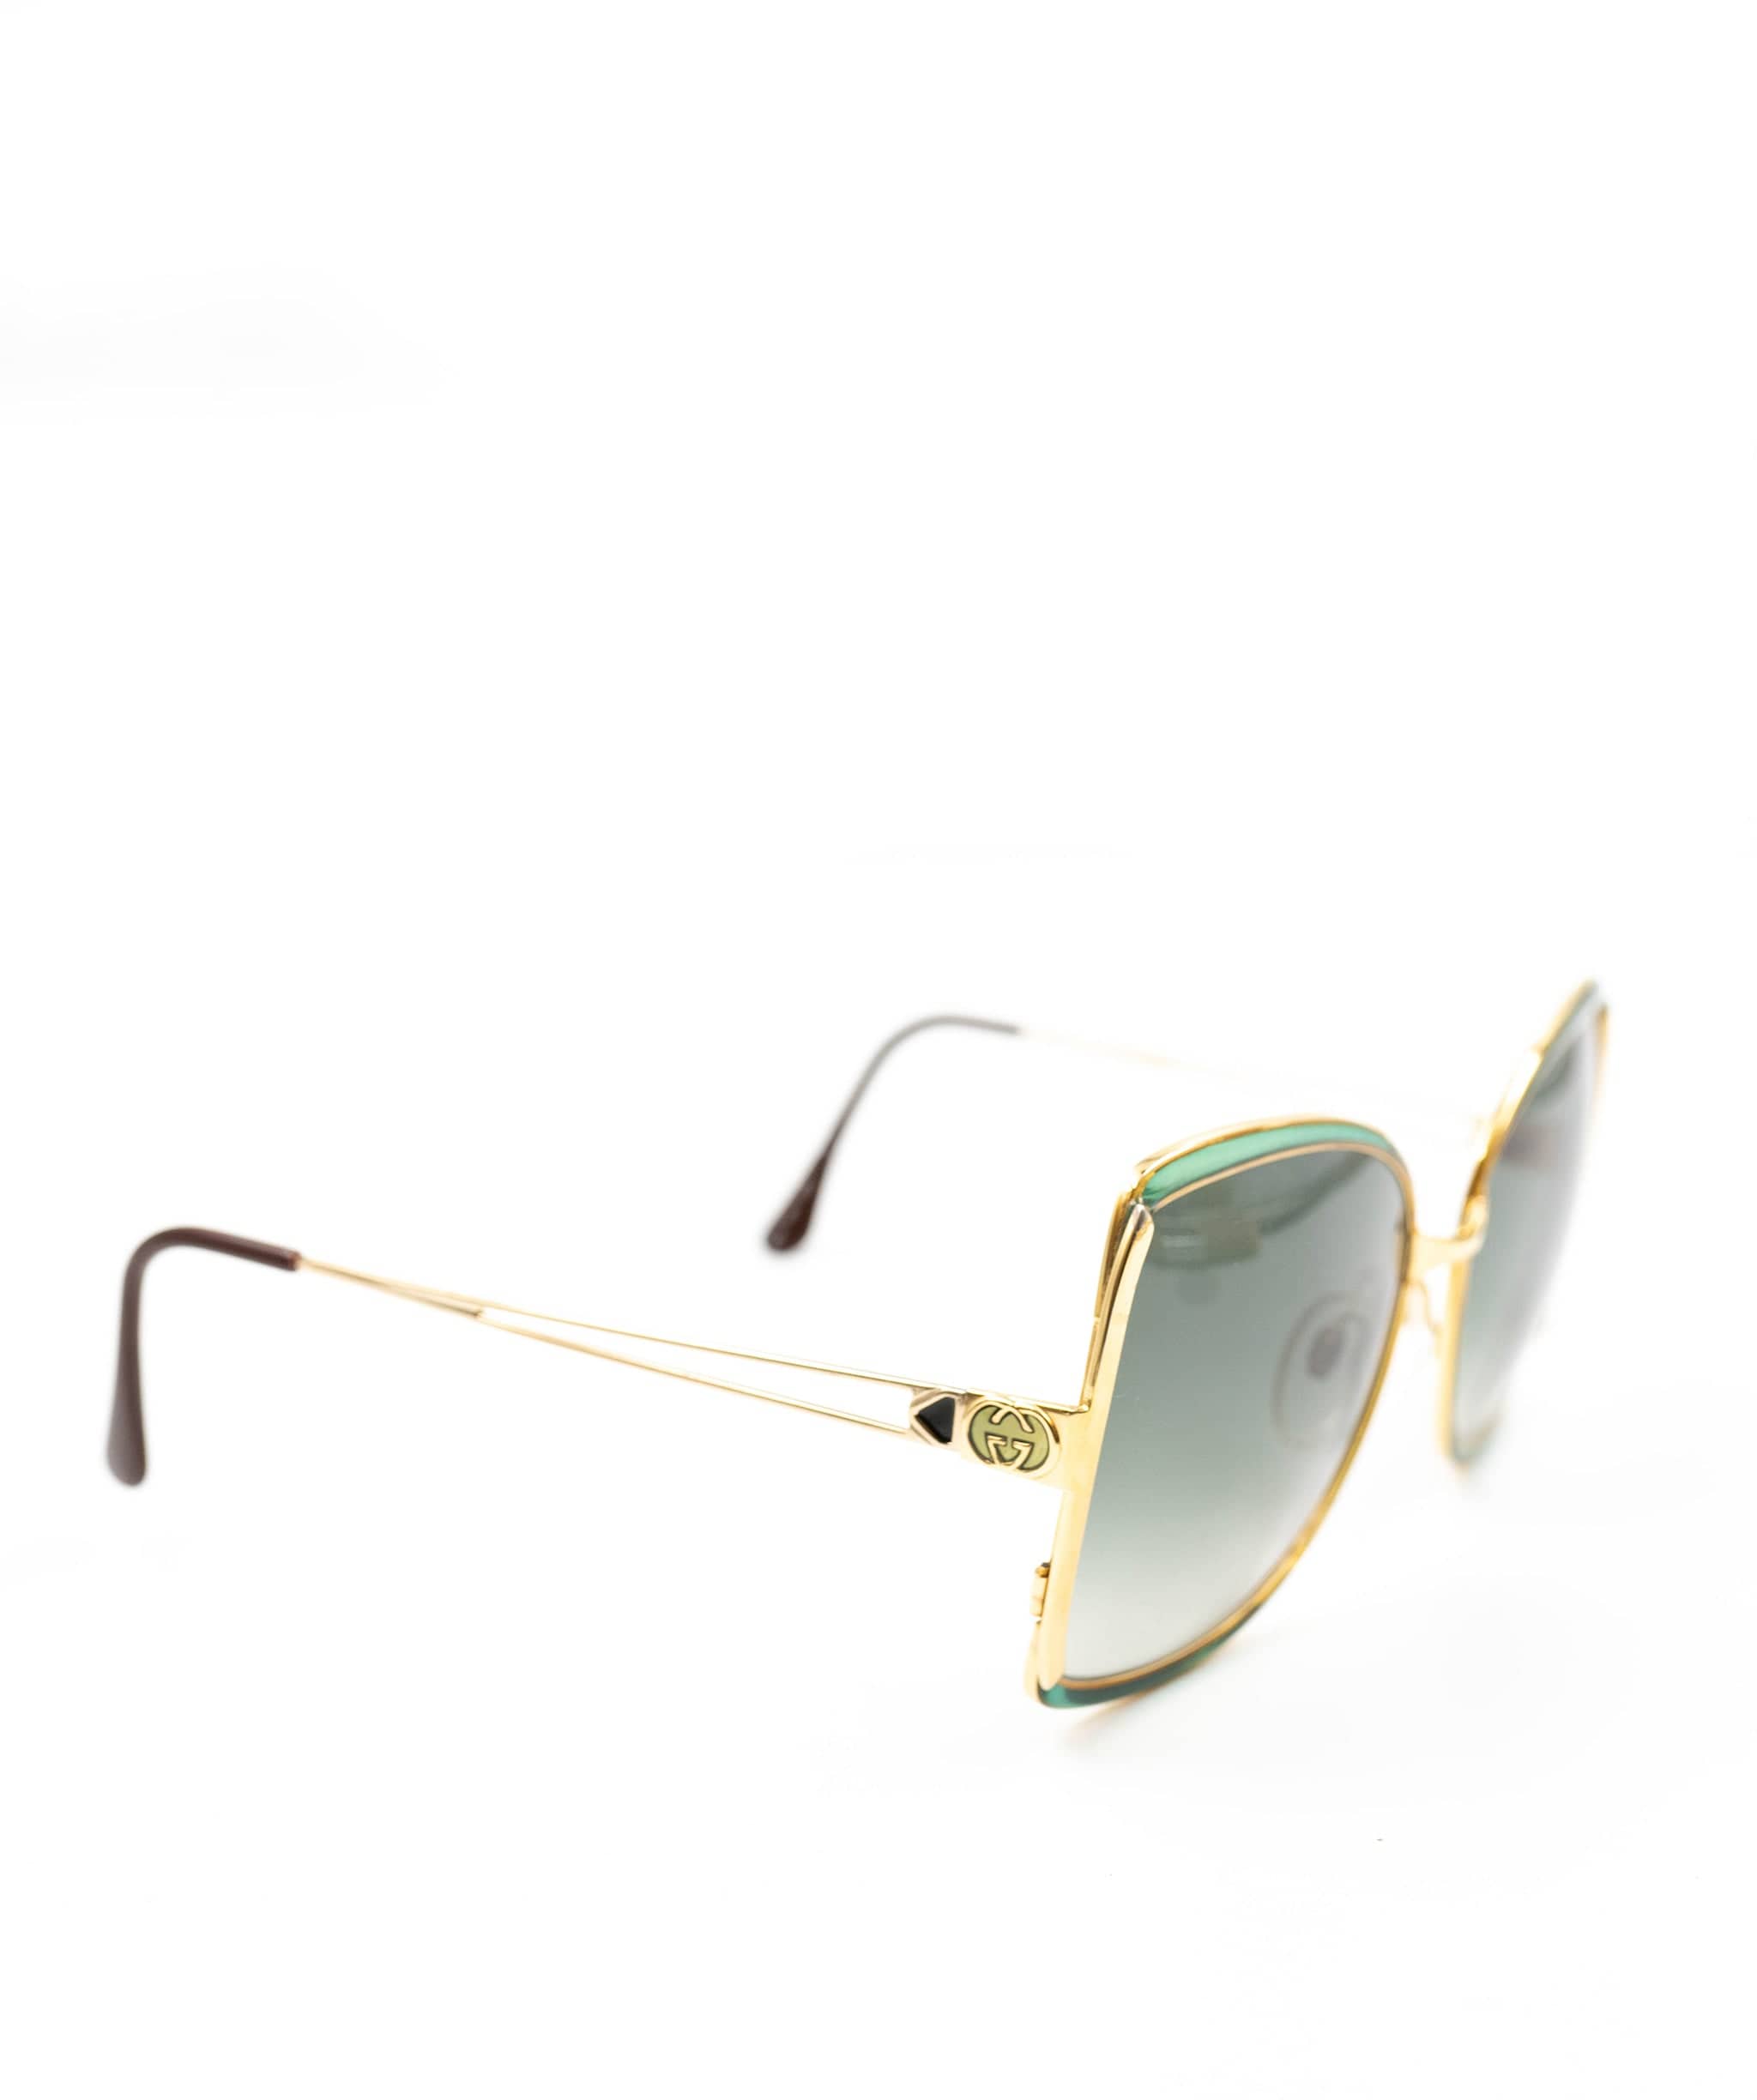 Gucci Gucci 70s inspired Sunglasses - AWL2603